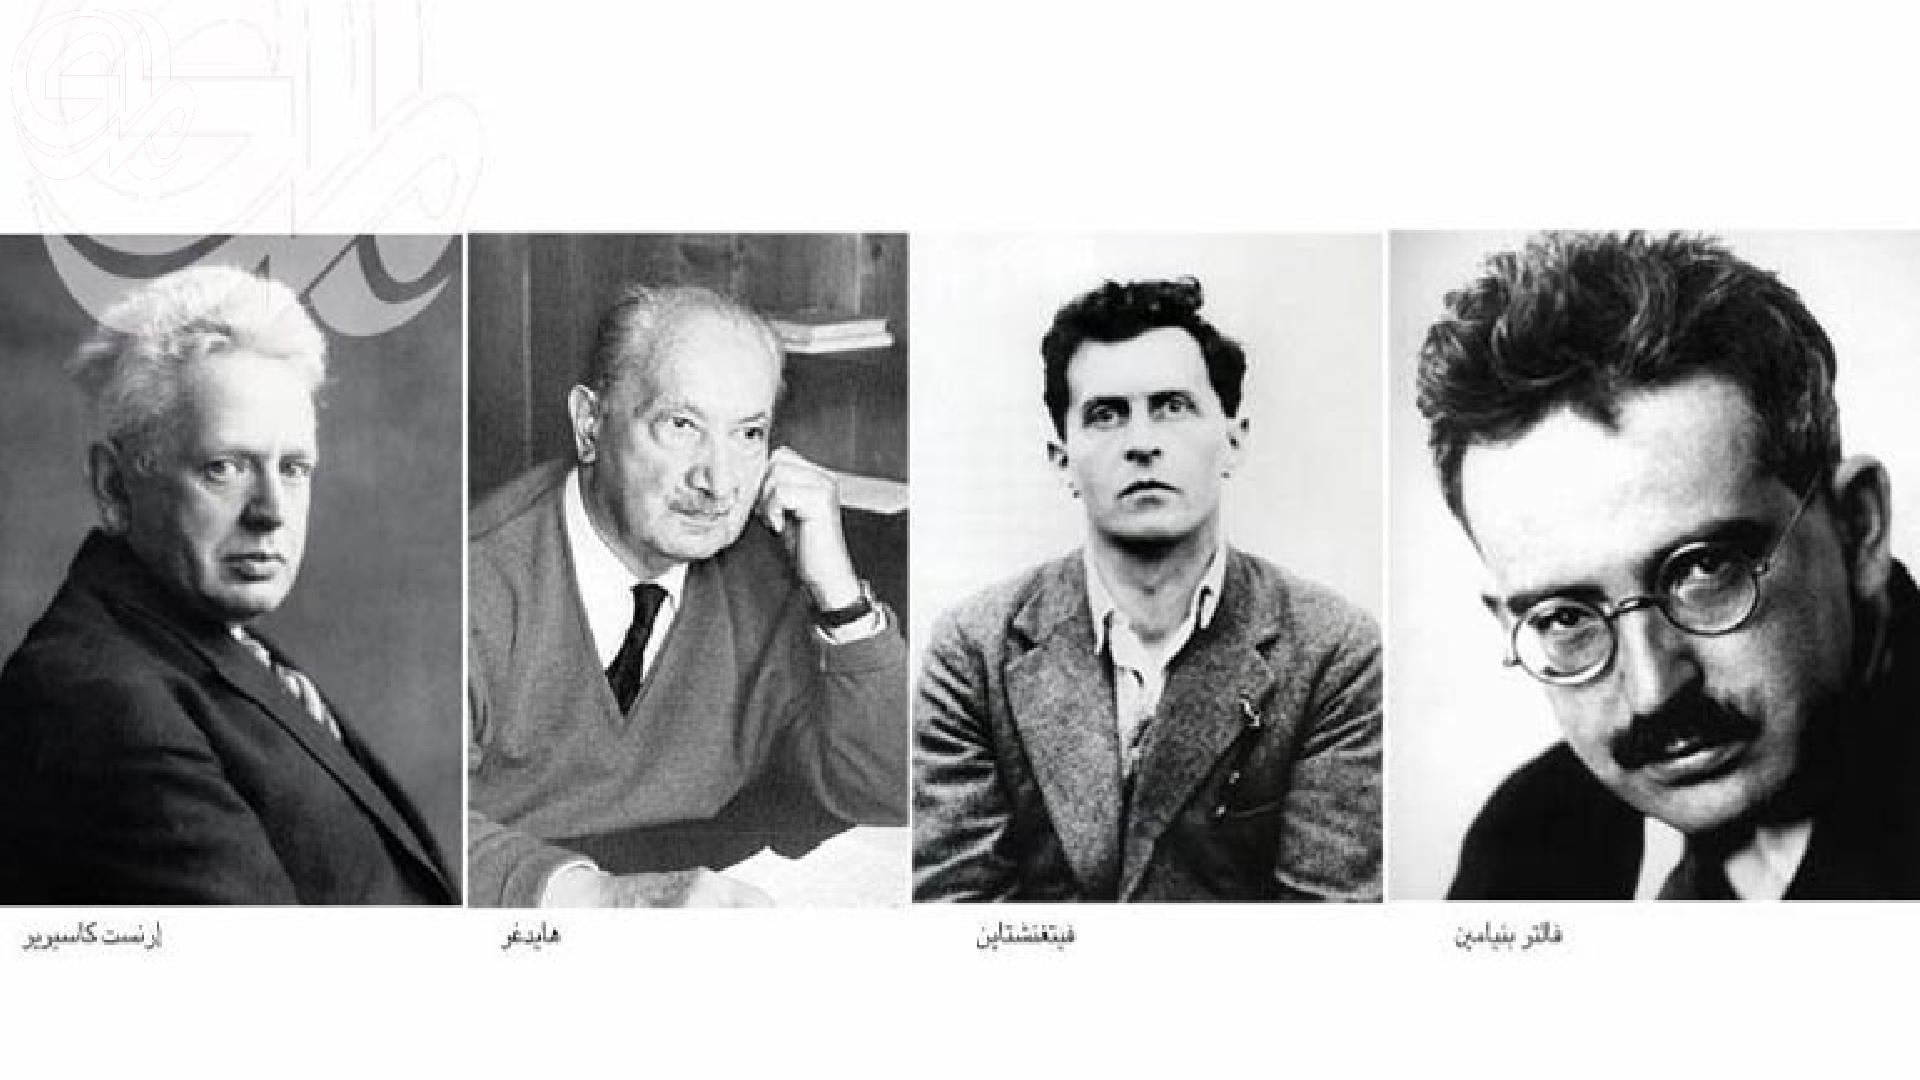 المفكرون الأربعة الذين أعادوا إختراع الفلسفة